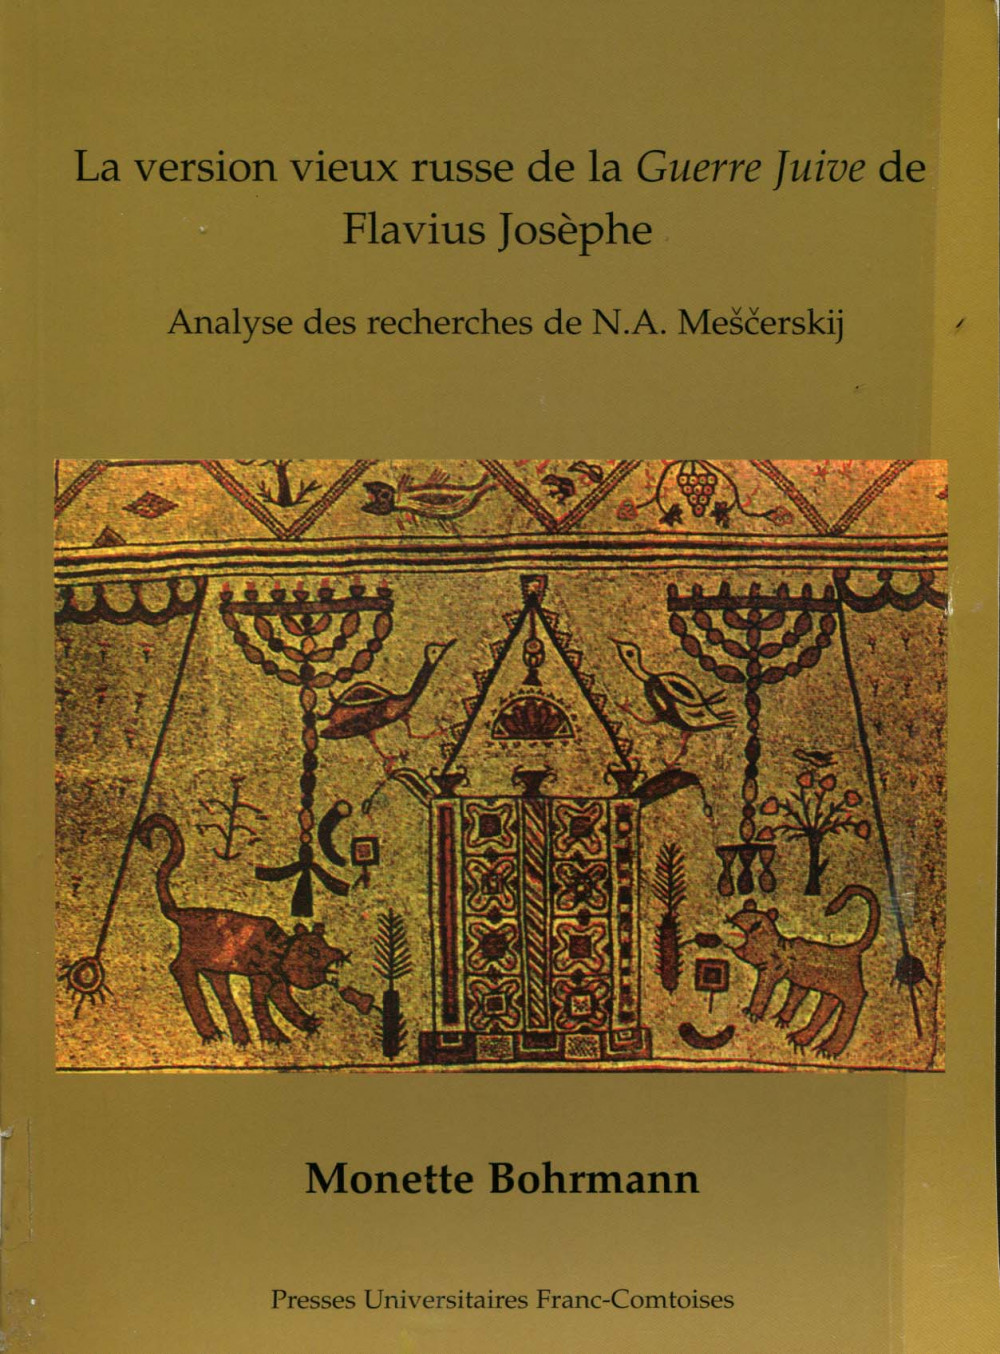 La version vieux russe de la Guerre juive de Flavius Josèphe